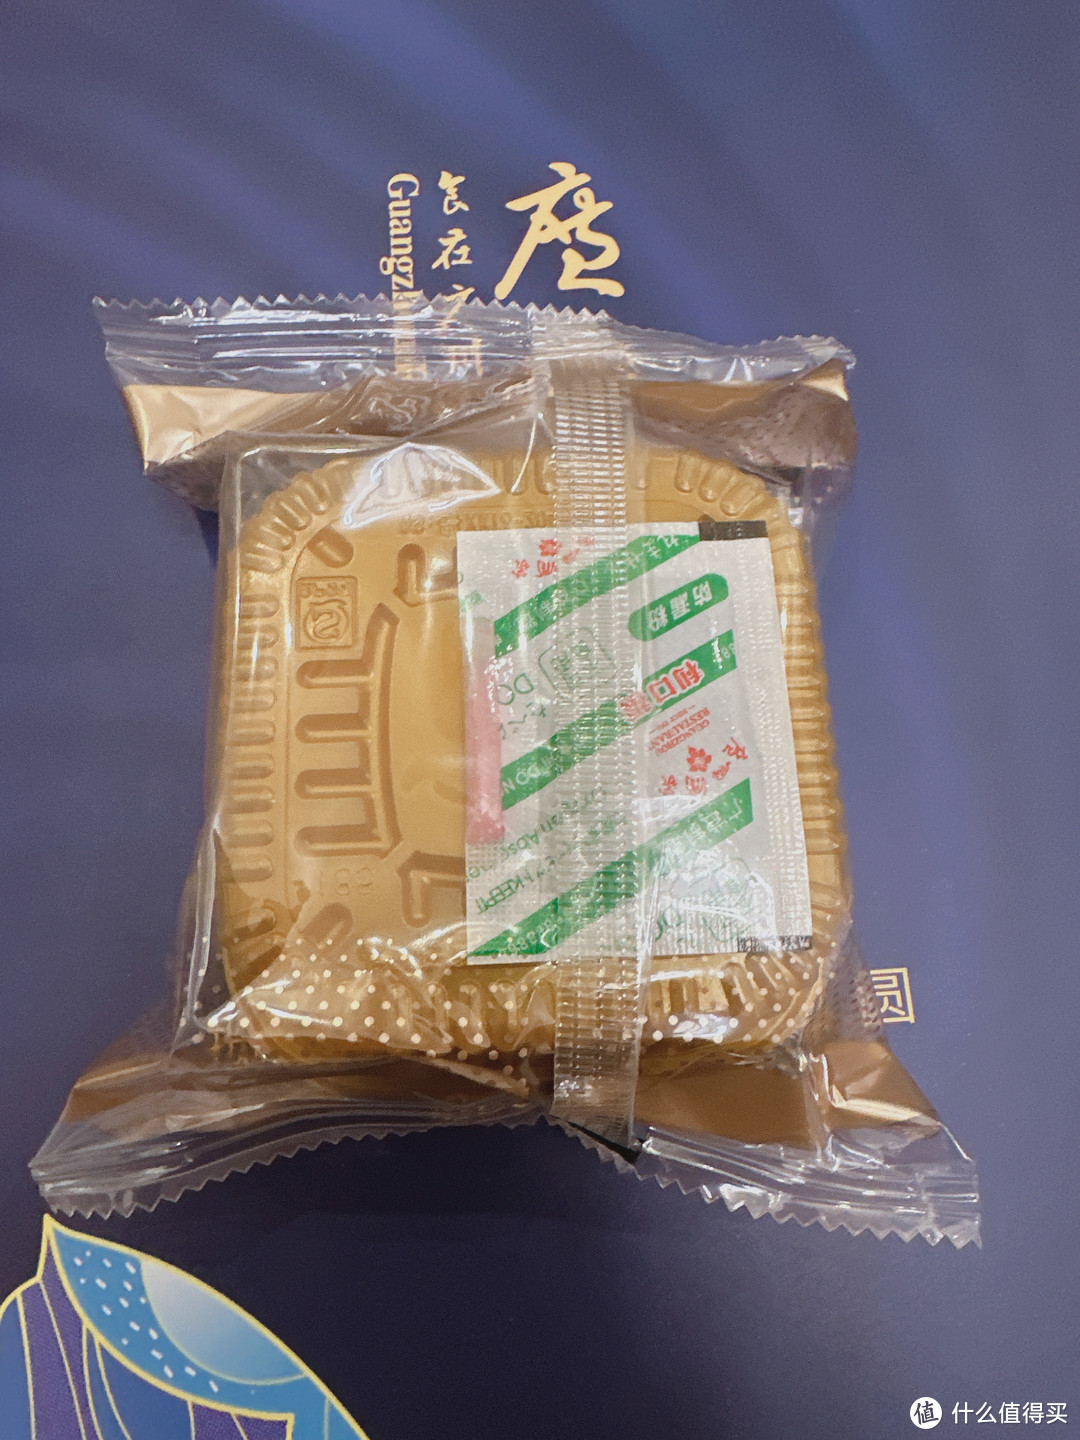 双节来临，值得买好礼成双—定制版广州酒家月饼和积木礼盒精晒